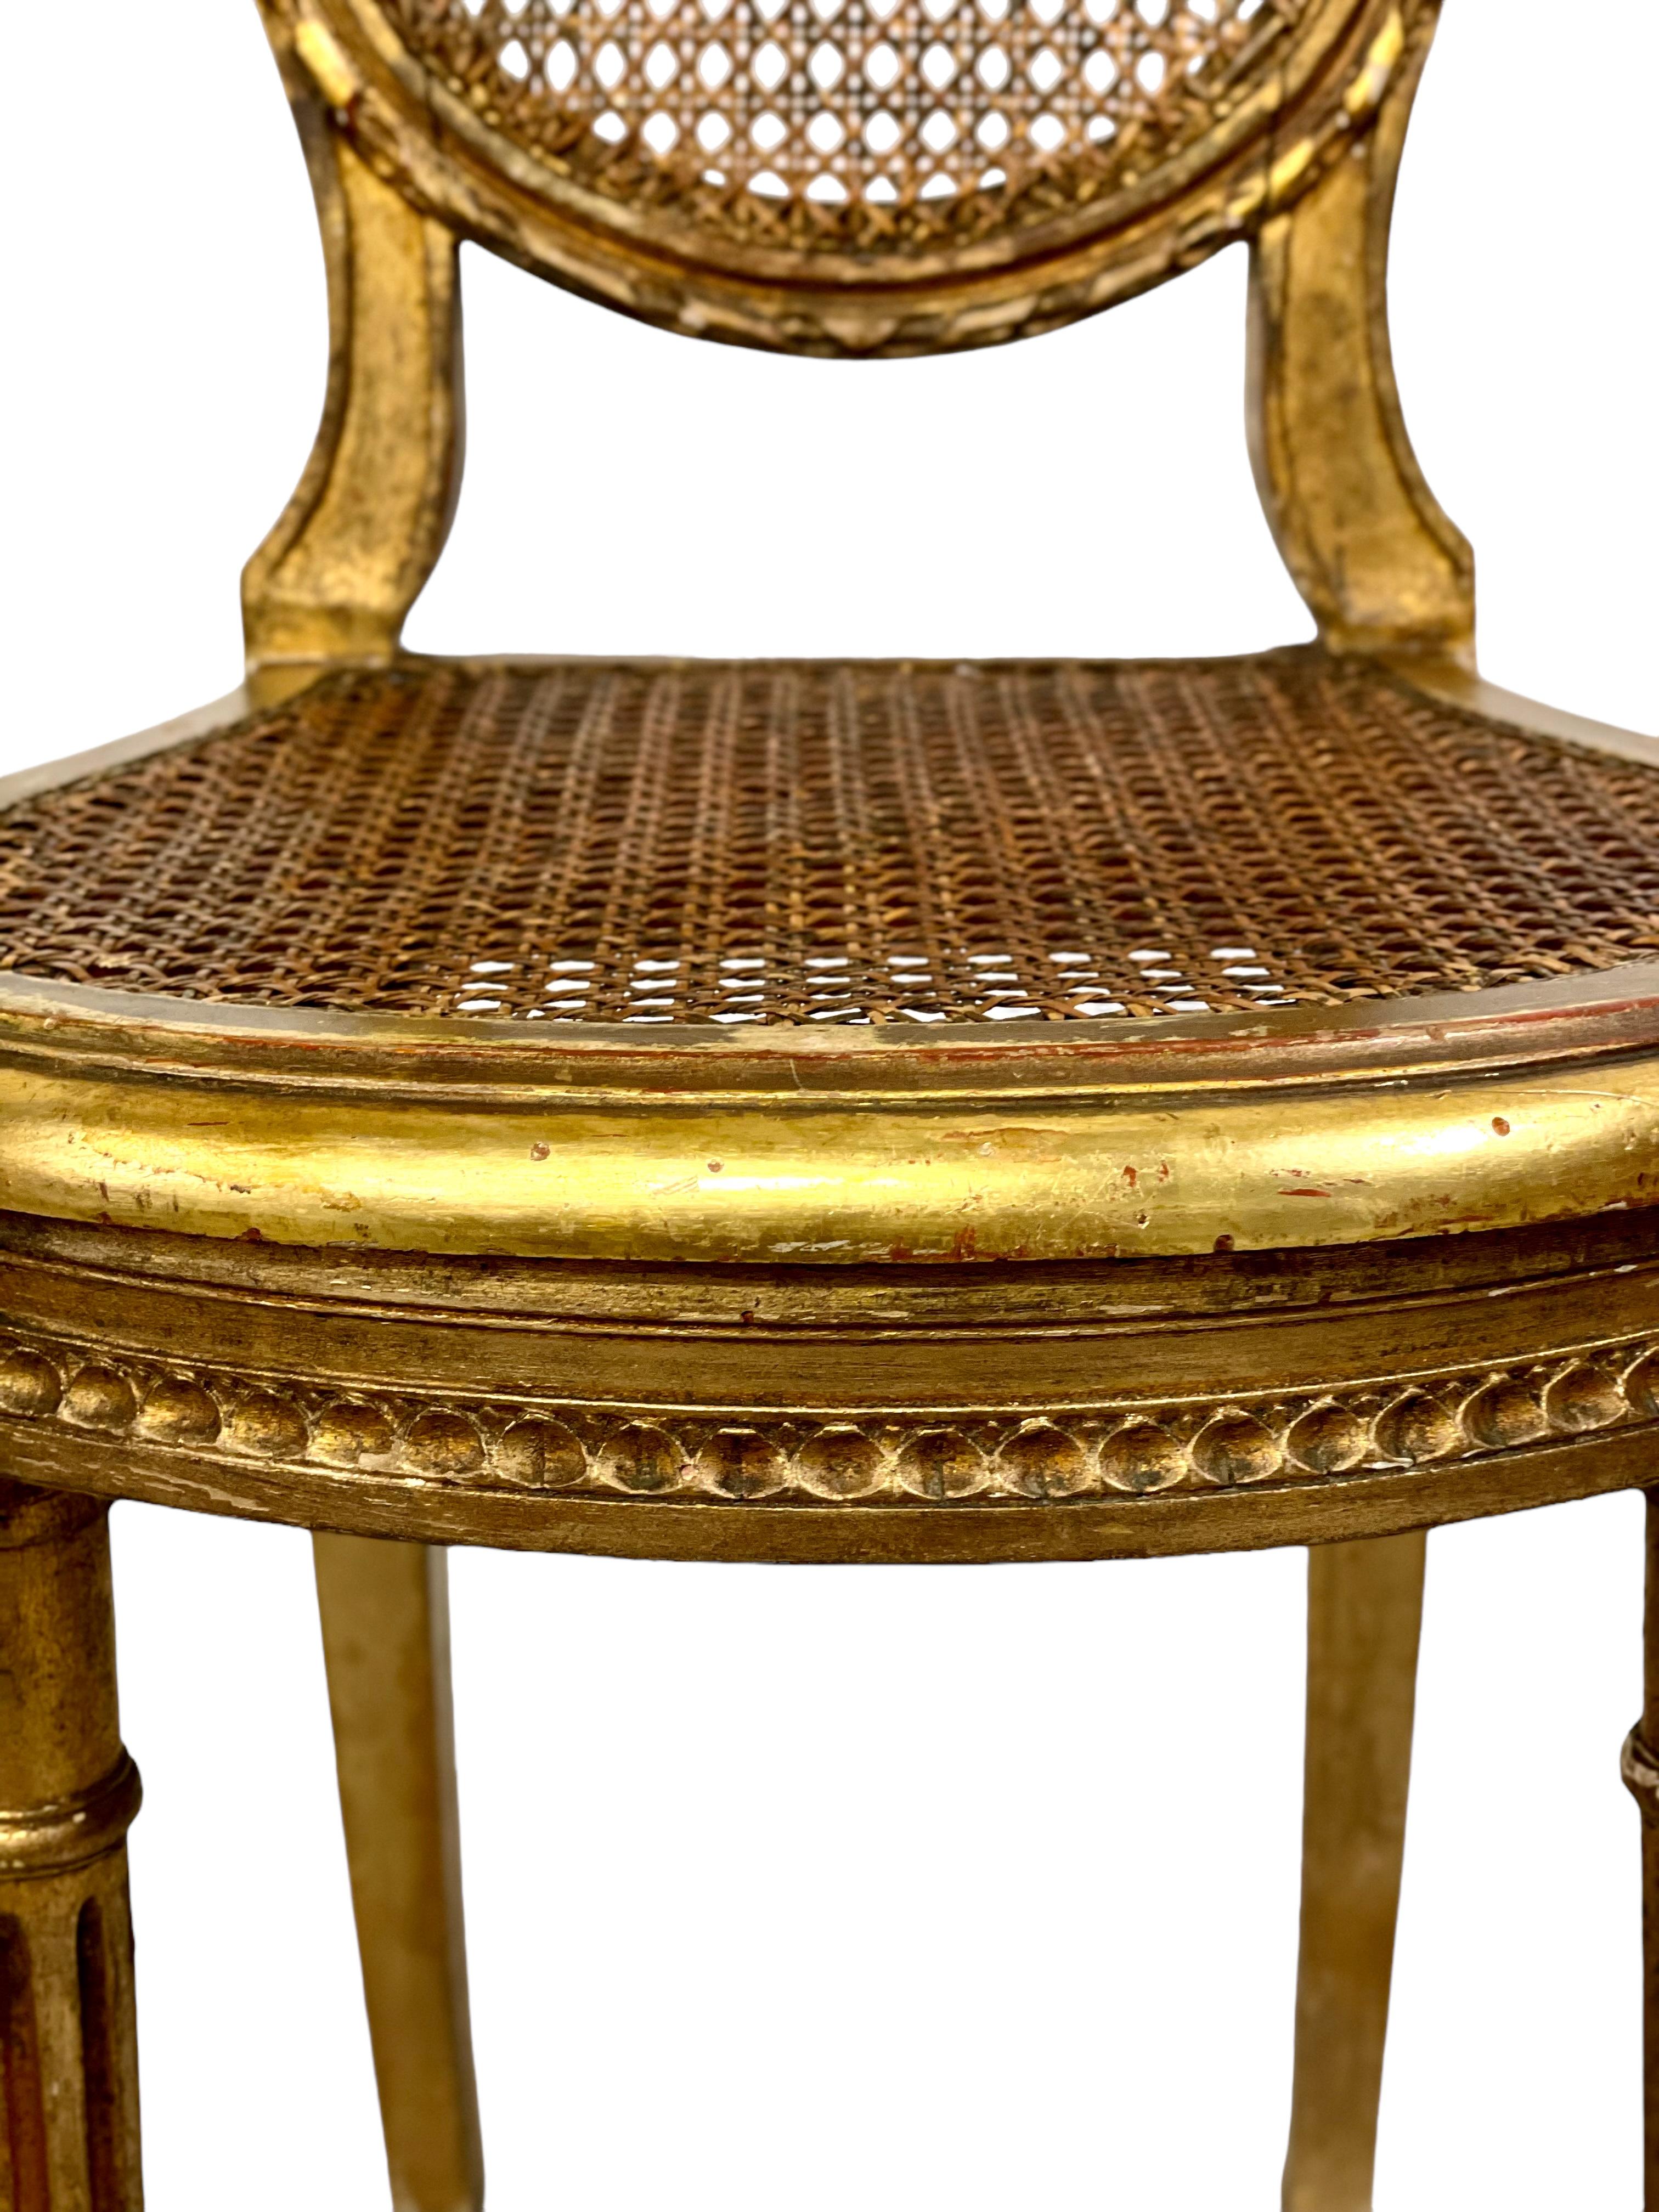 Paire de chaises d'appoint de style Louis XVI, exquisément dorées, datant du 19e siècle, avec des dossiers ovales légers et cannelés et des sièges cannelés confortables et en forme. Les pieds avant sont minces et sculptés, avec des motifs cannelés